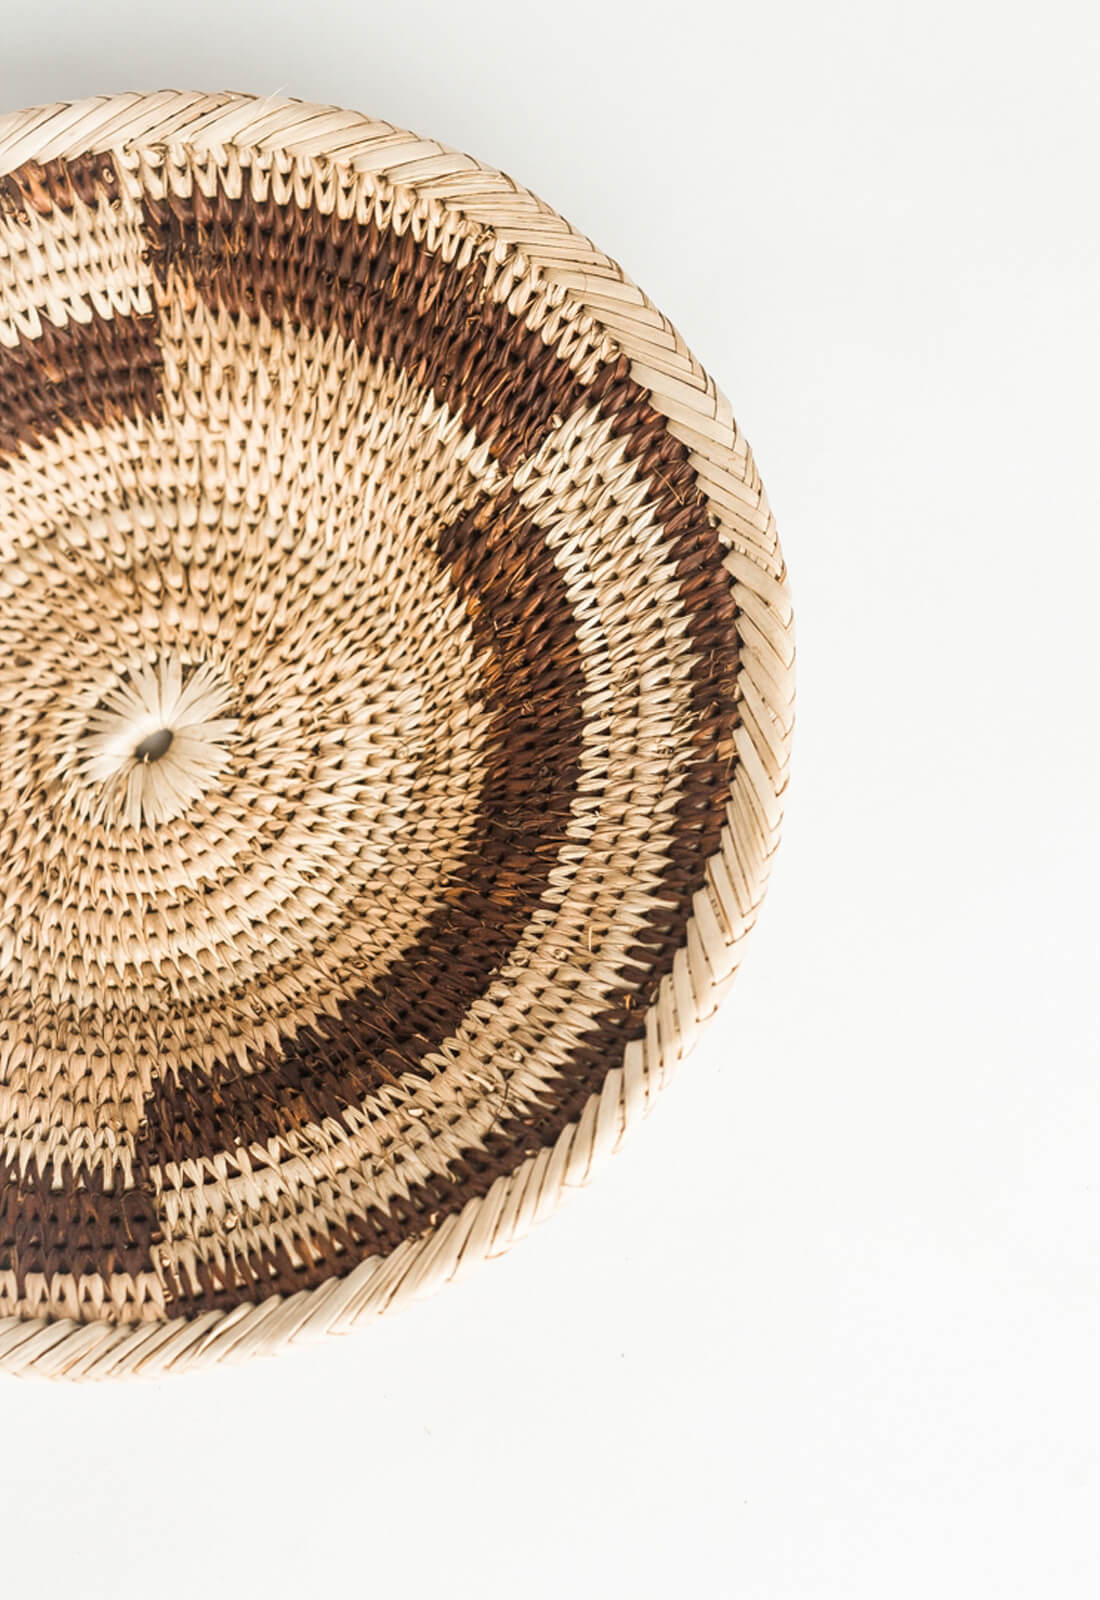 Close up view of a Zambian plateau basket 